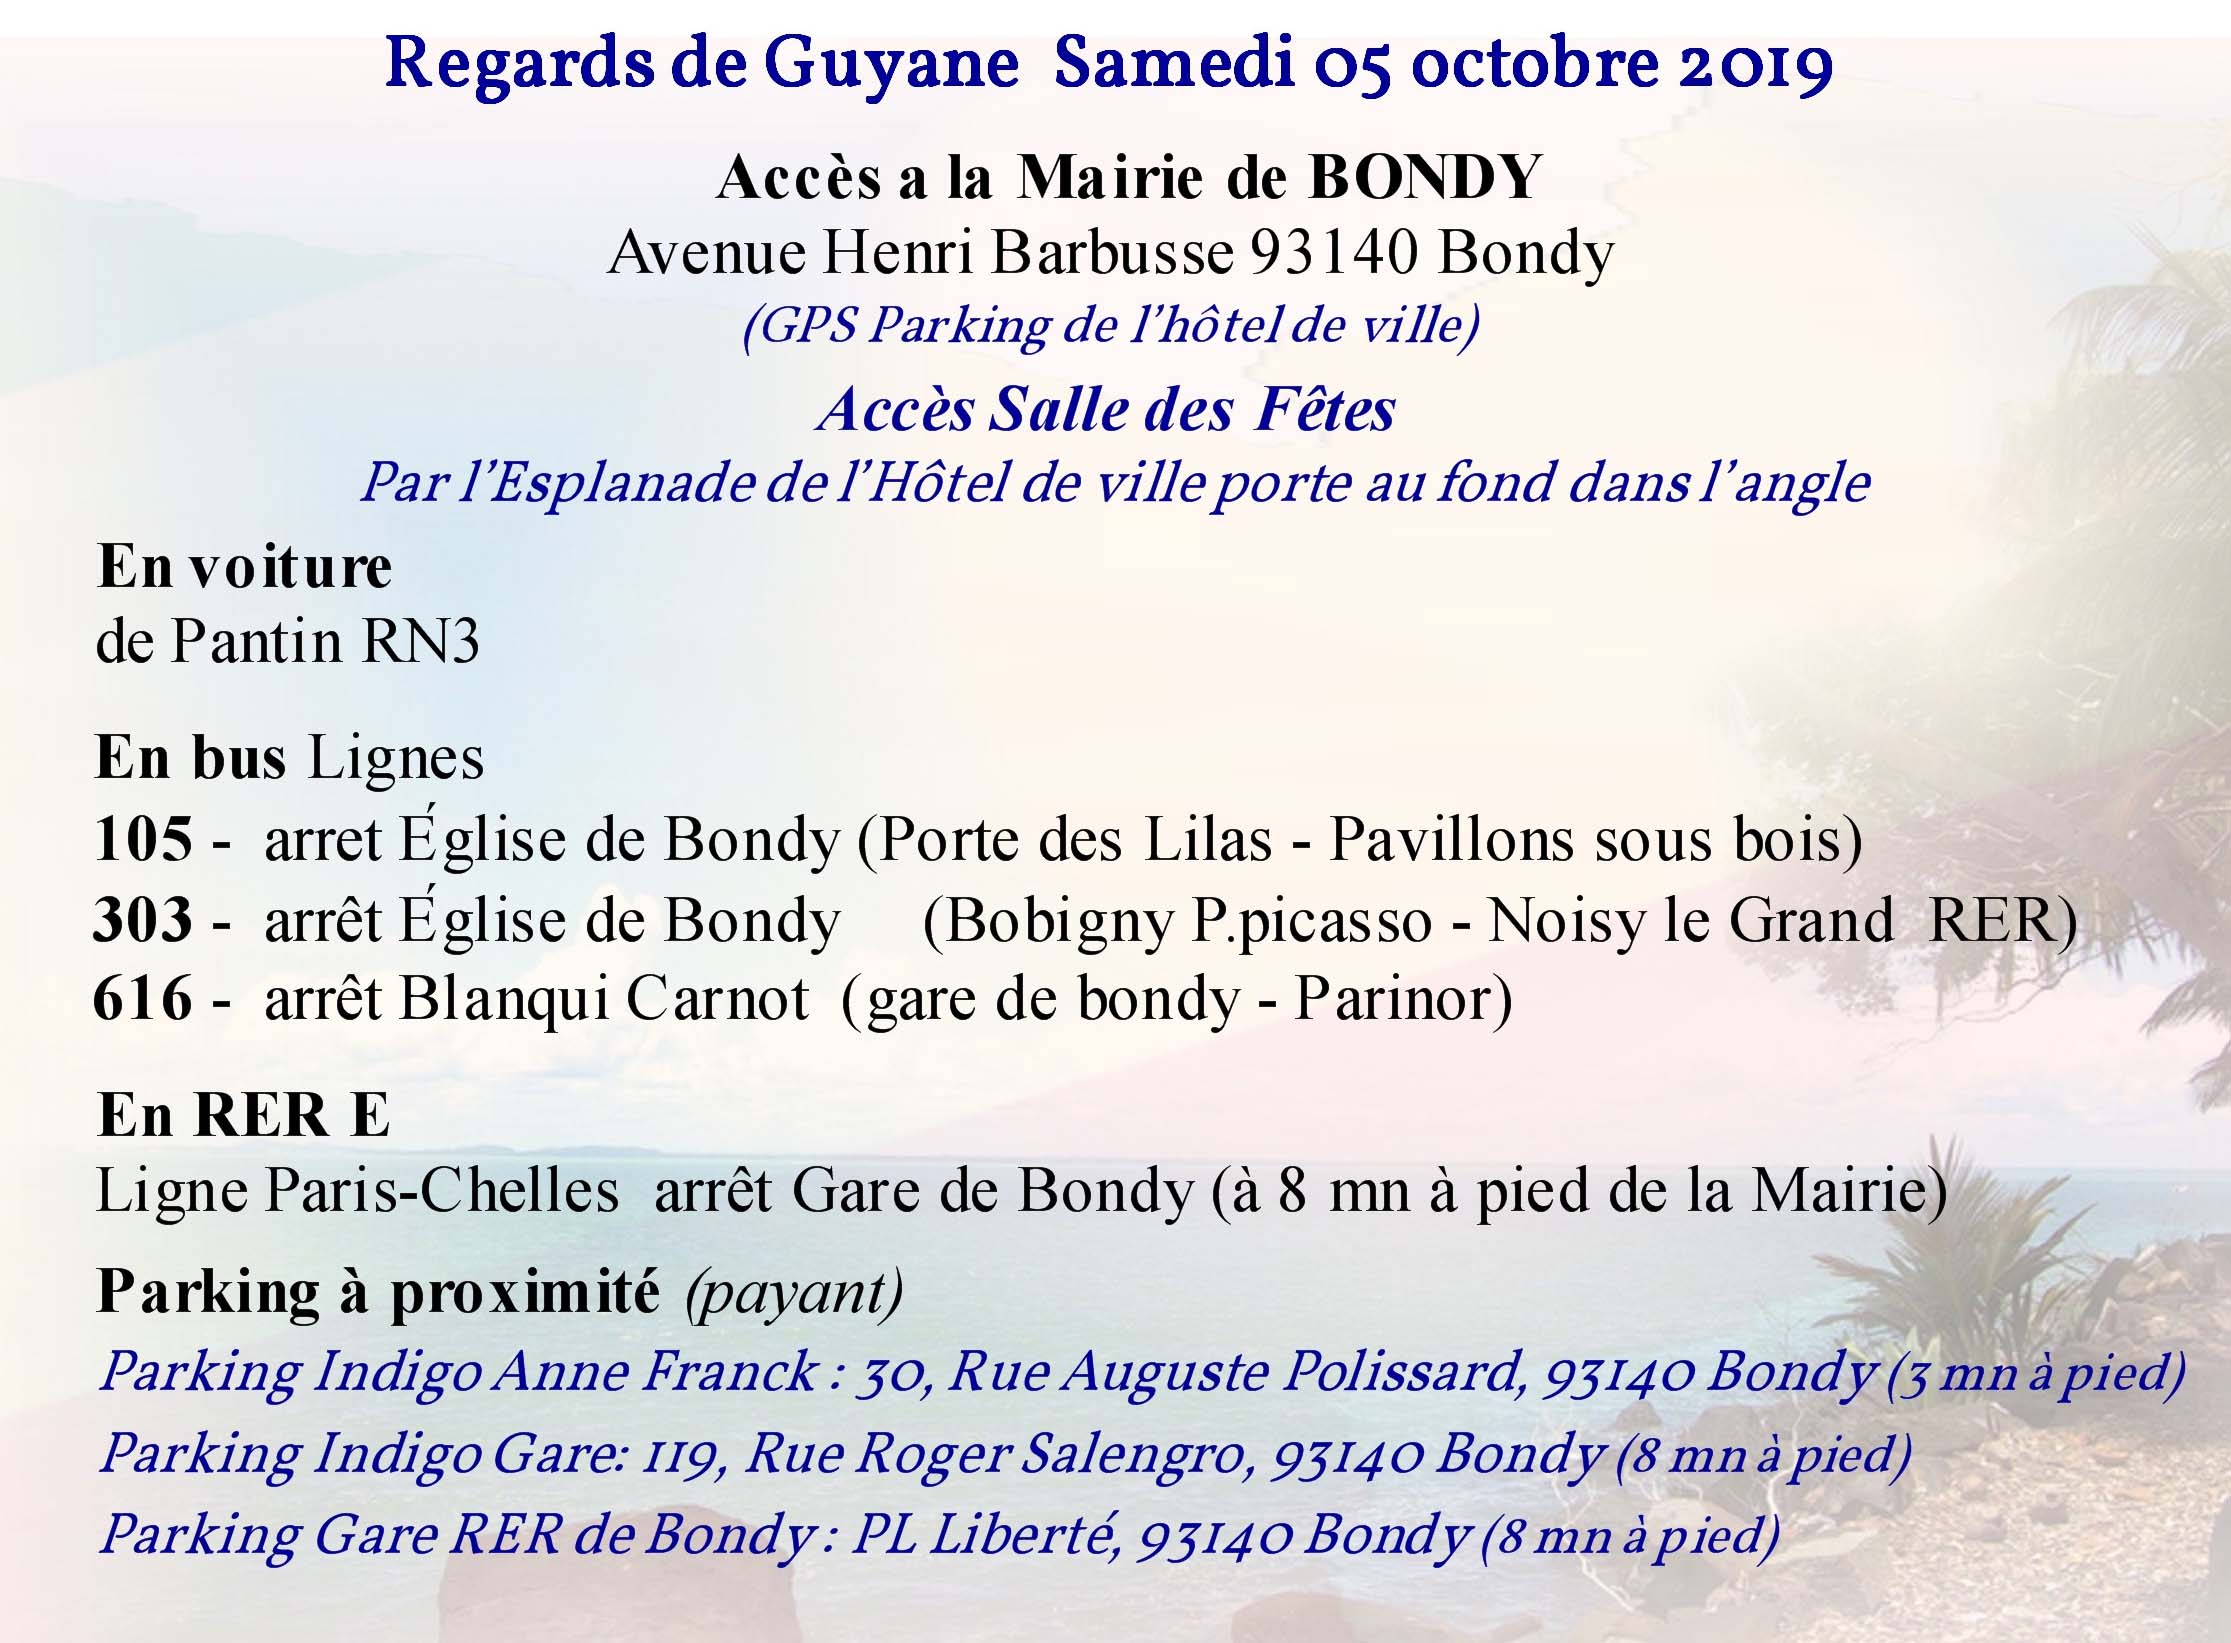 Accès Mairie de Bondy - Regards de Guyane 2019 - AMC Dokonon & Partenaires